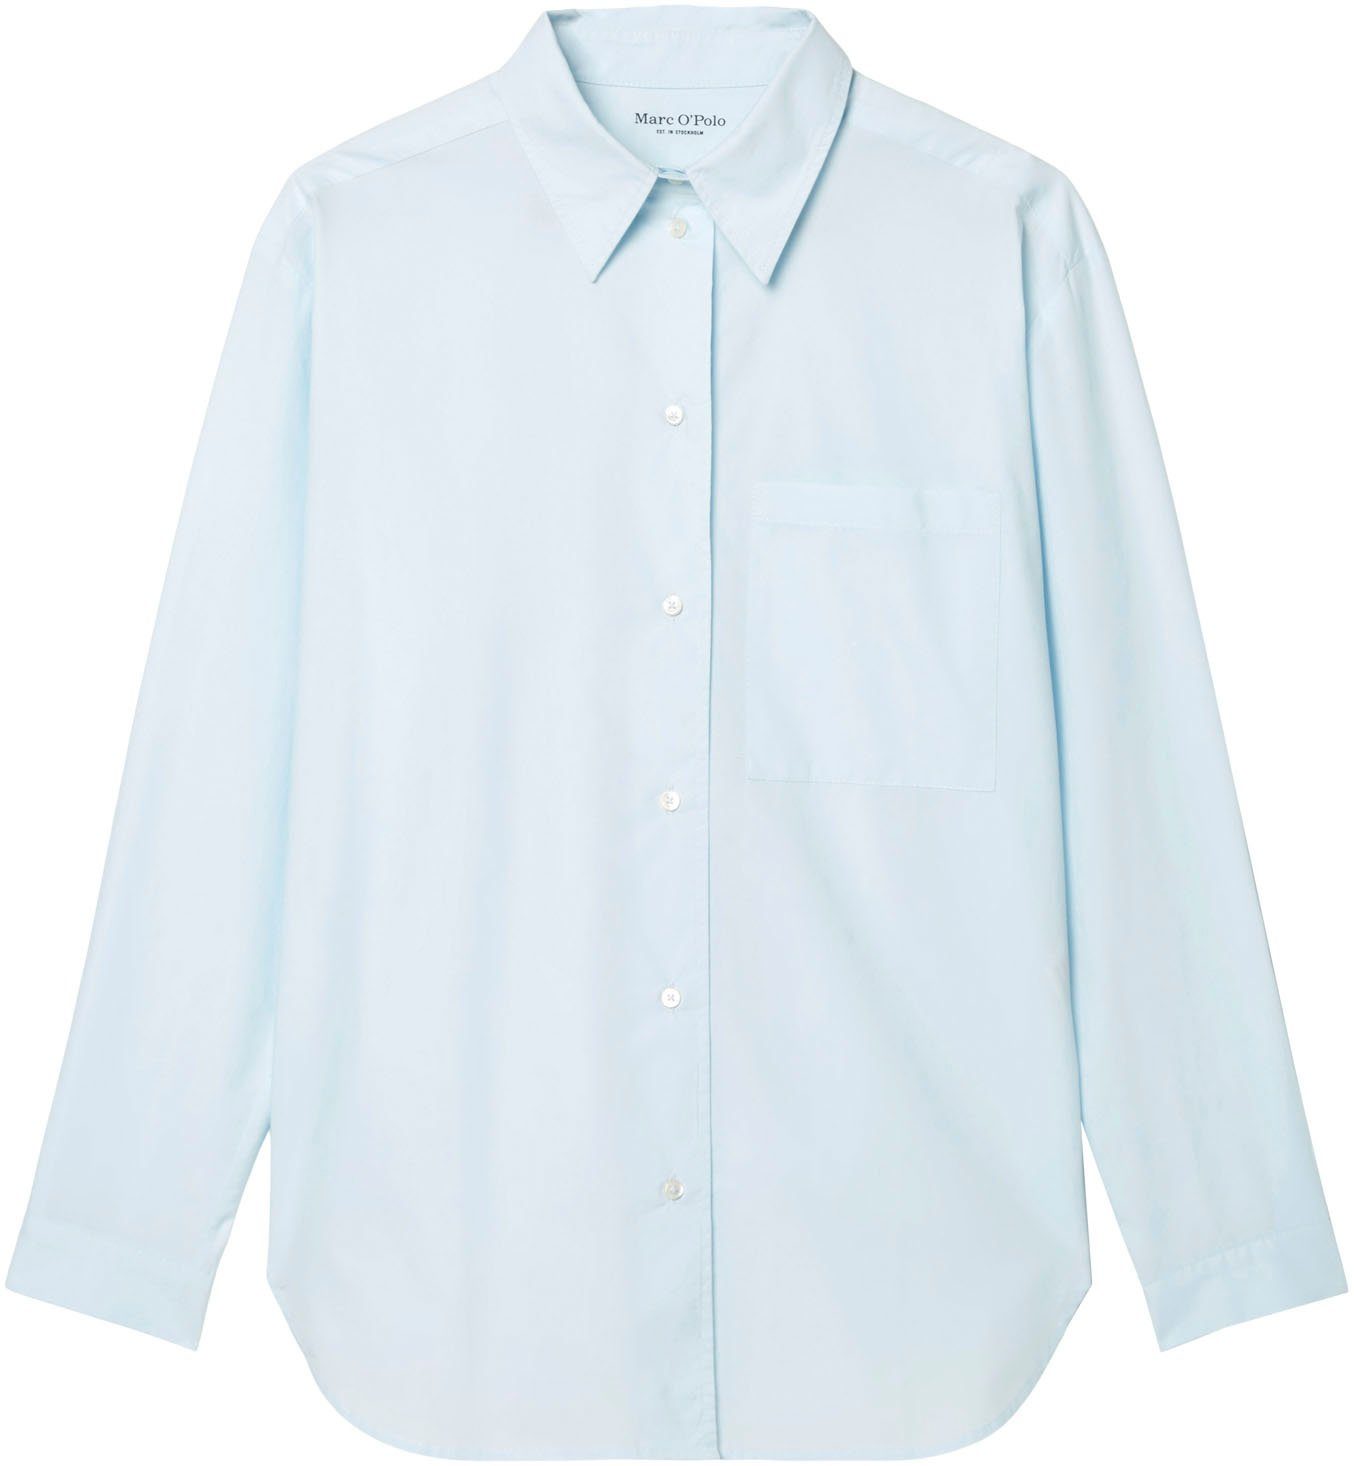 patched Hemdbluse sleeve, O'Polo einer kent Blouse, collar, solid Brusttasche mit pocket, hellblau long aufgesetzten Marc